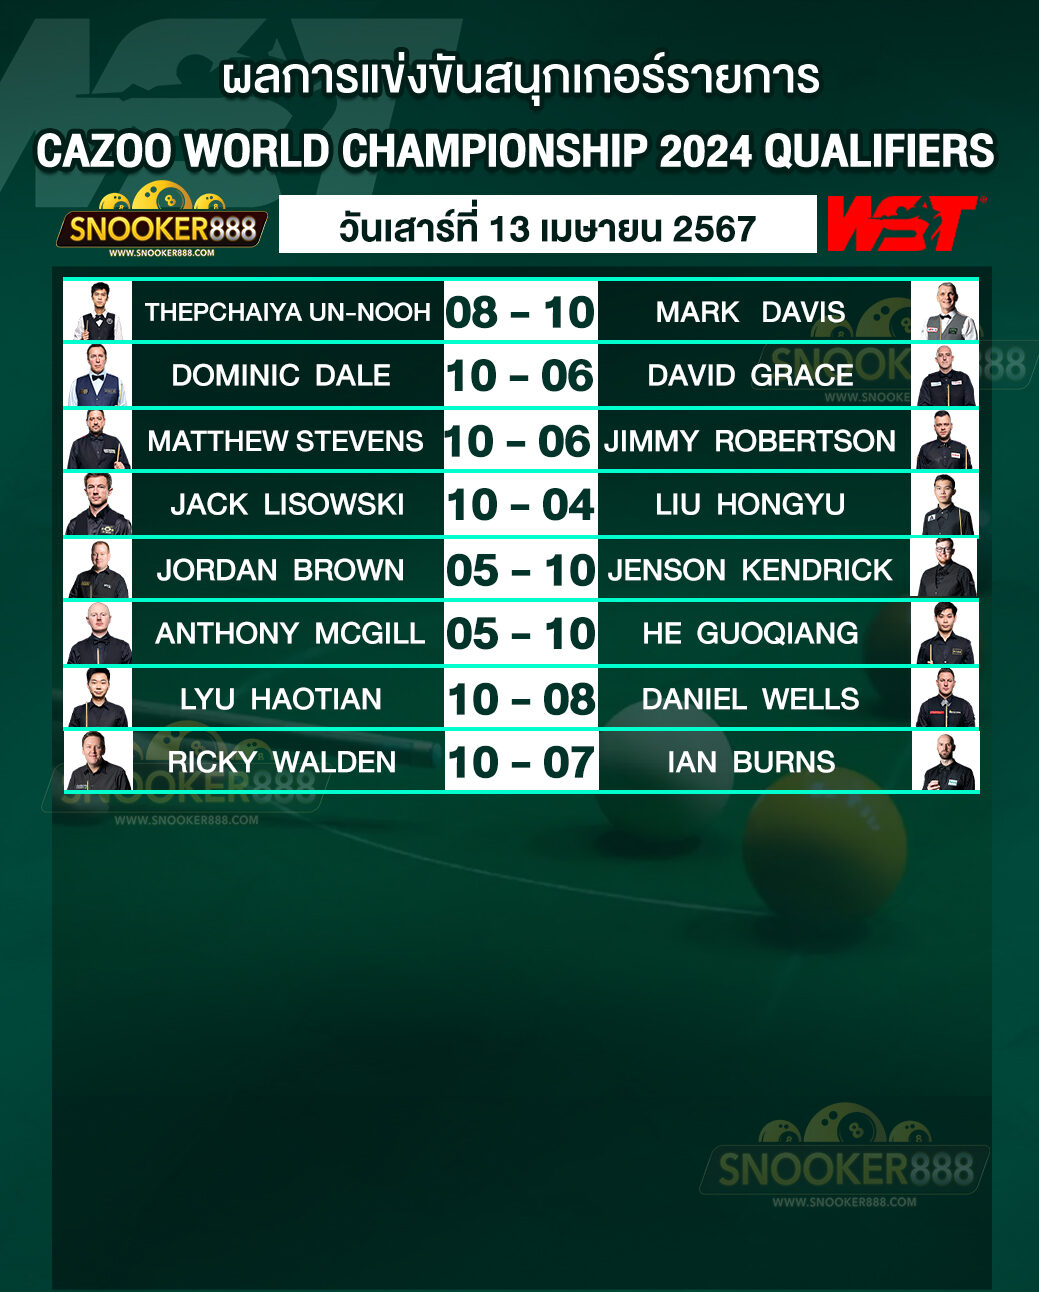 ผลการแข่งขันสนุกเกอร์ CAZOO WORLD CHAMPIONSHIP 2024 QUALIFIERS วันที่ 13 เม.ย. 67